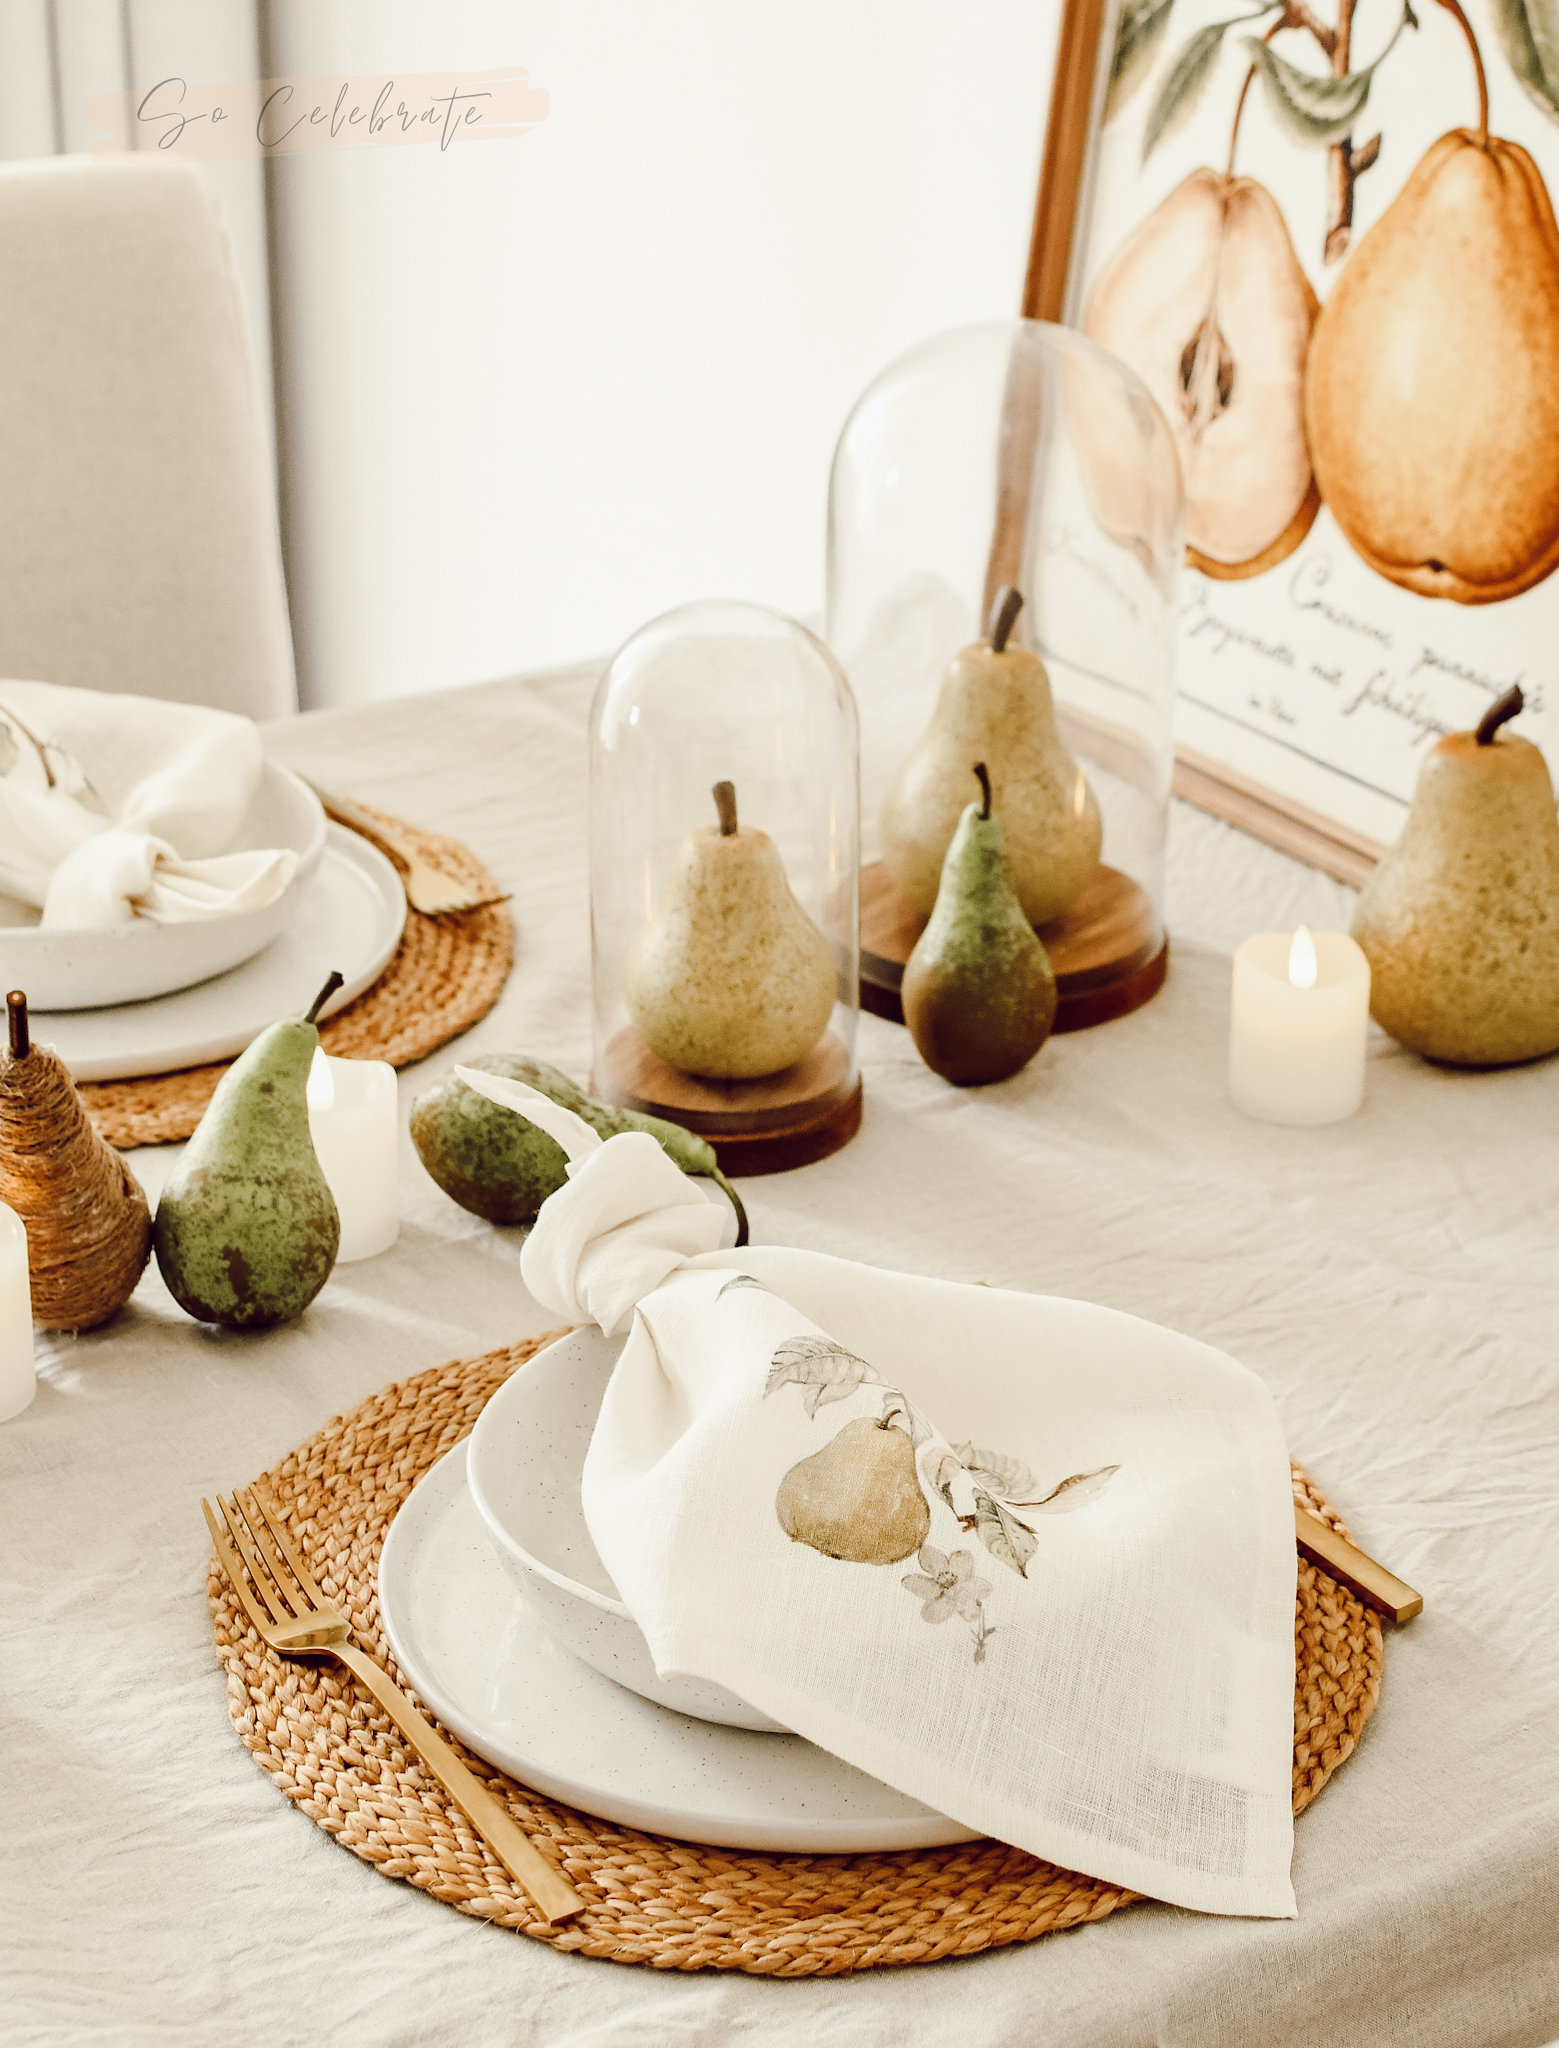 Servet met peren erop op een gedekte tafel - herfstdecoratie